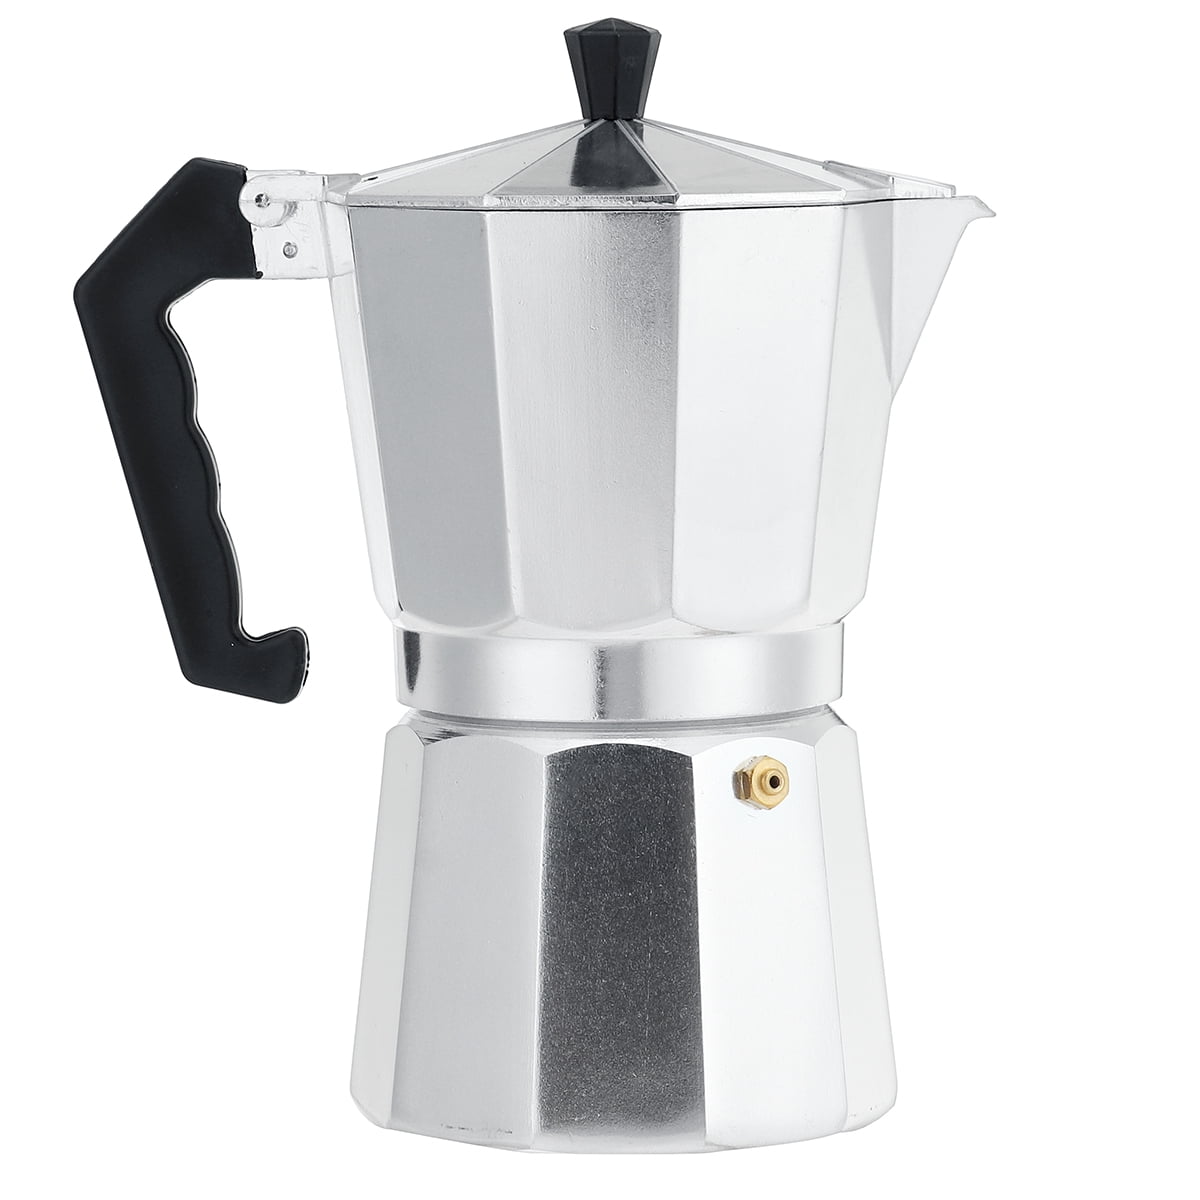 150 ml Espresso Maker Mocha Pot Made of Aluminium Espresso Machine Coffee Maker Espresso Maker for 3 Cups